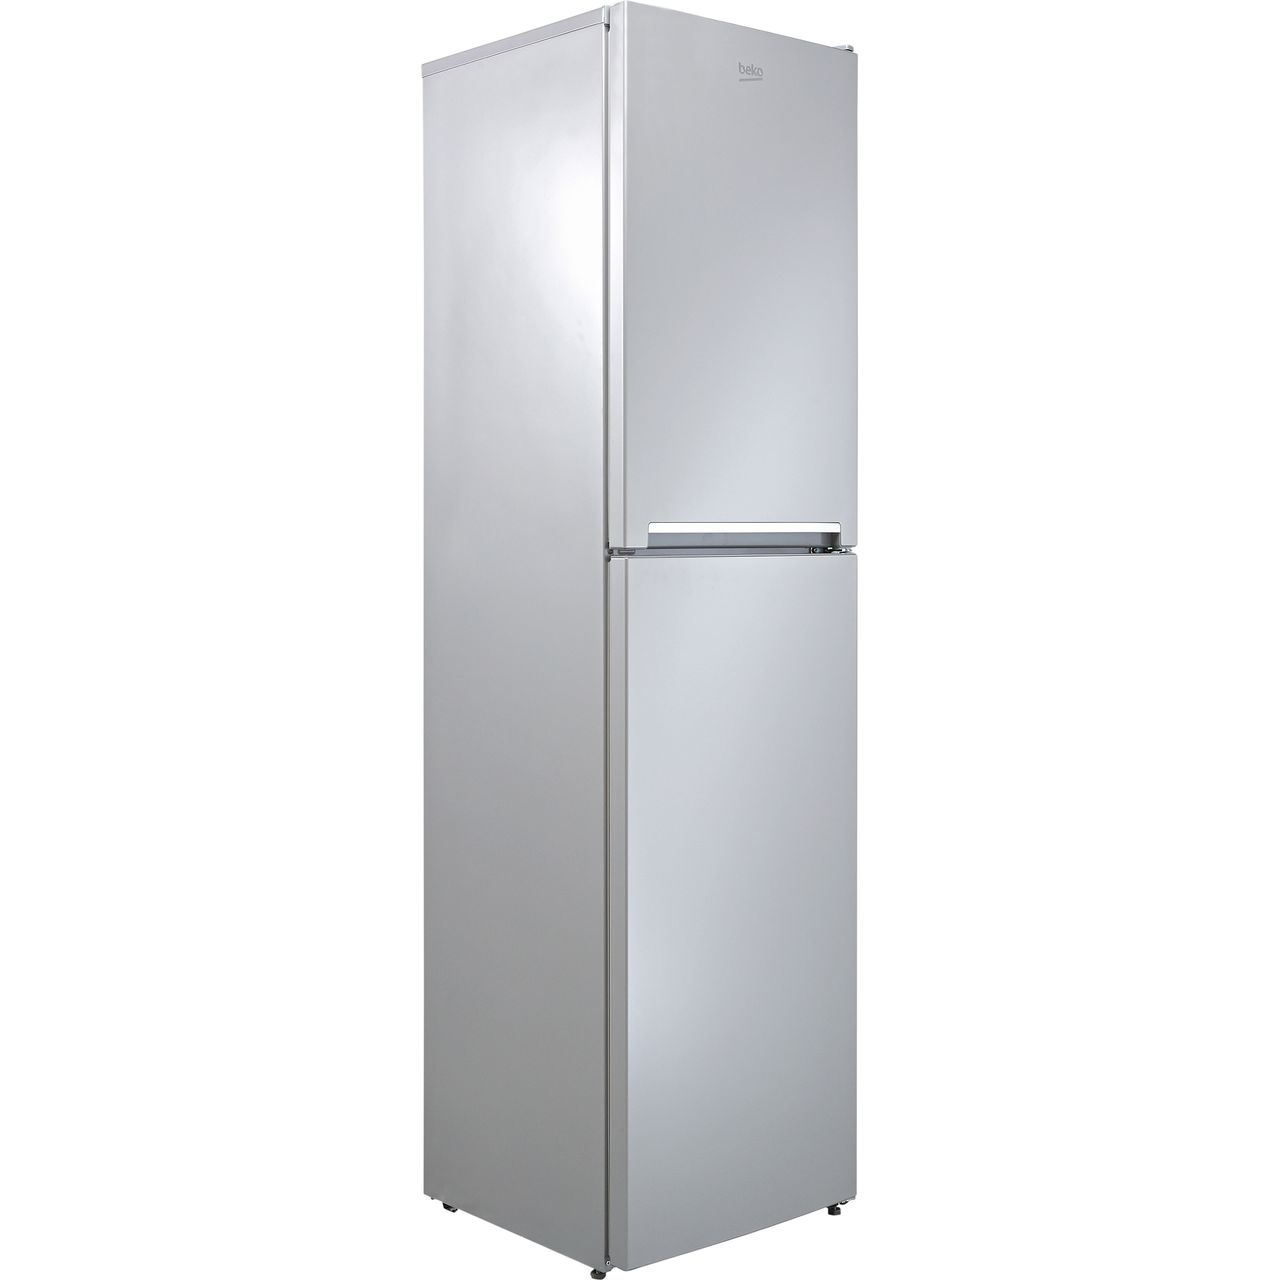 42+ Ao fridge freezer discount code ideas in 2021 